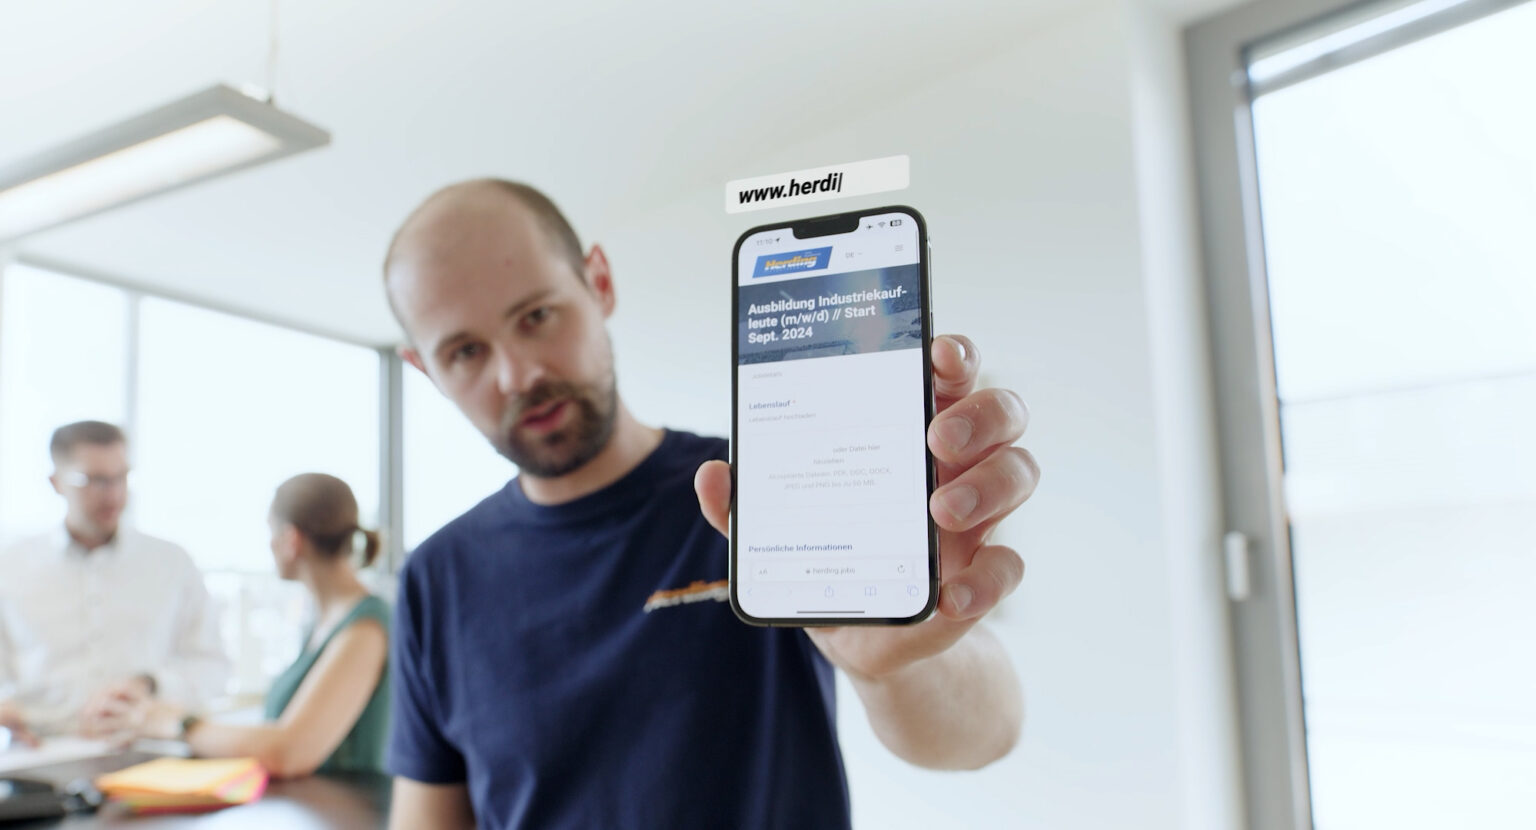 Standbild aus einer Werbung, die einen Mann zeigt, der in einer hell erleuchteten Büroumgebung ein Smartphone in die Kamera hält.